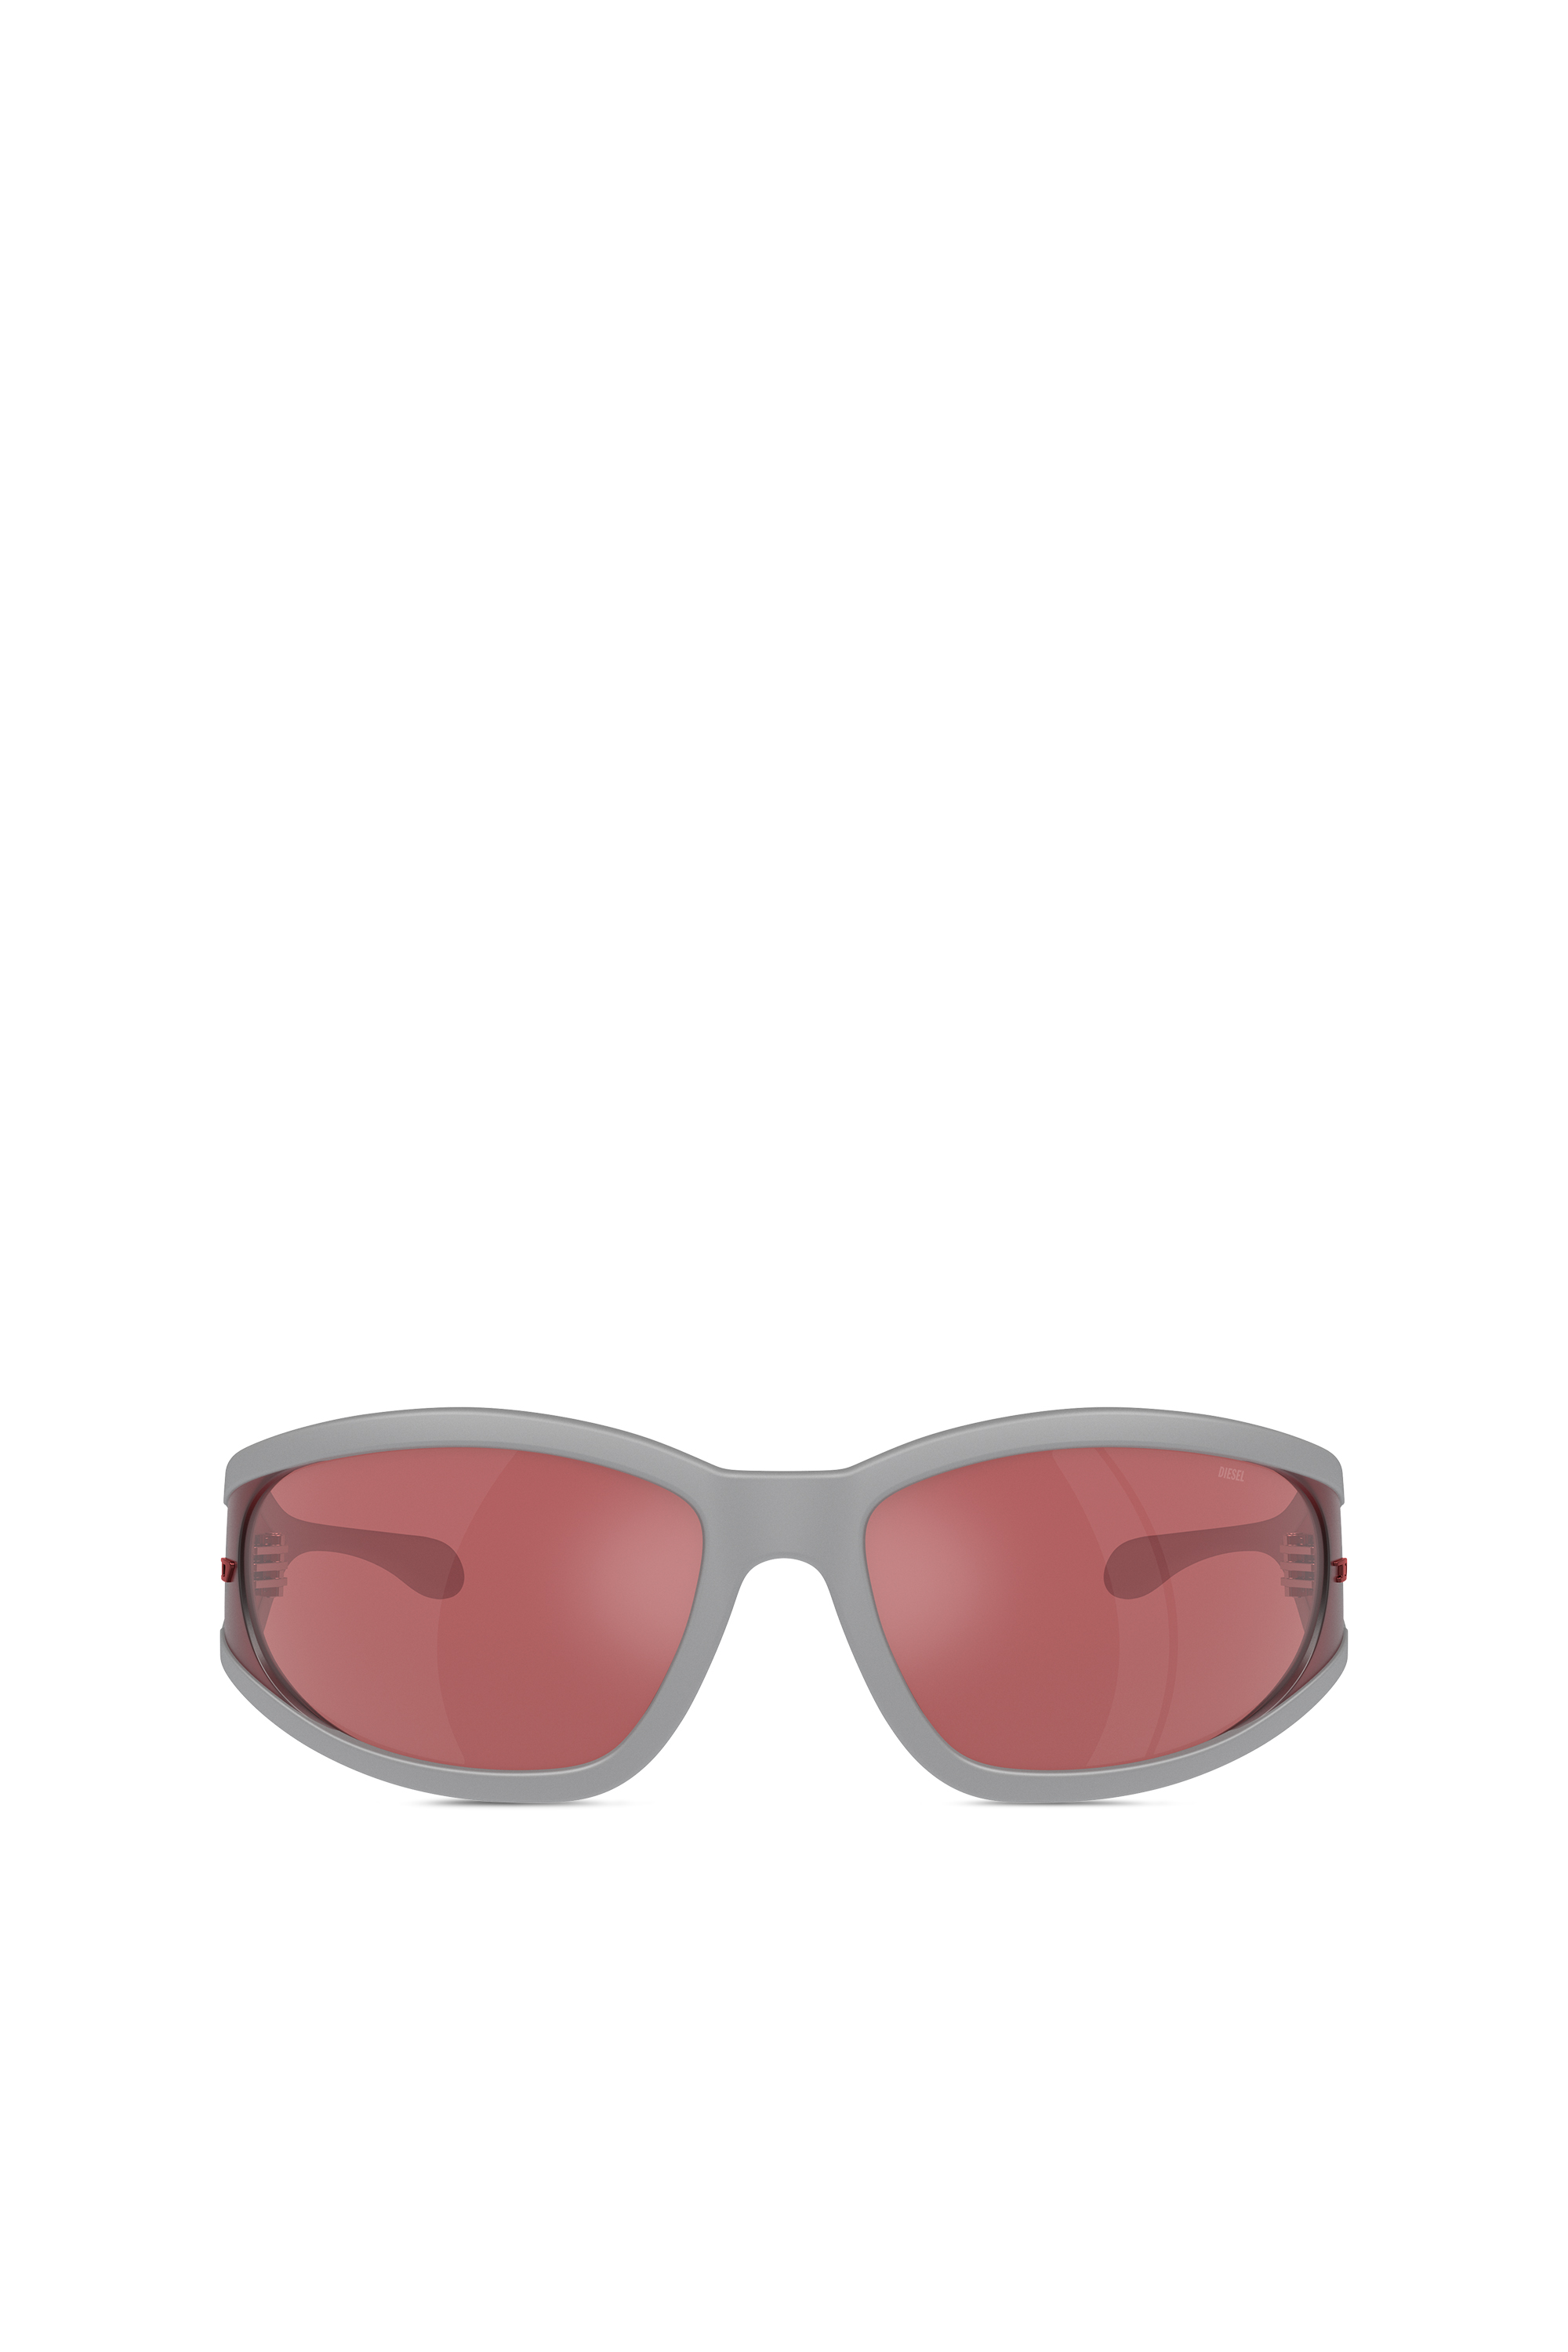 Diesel - Gafas de sol rectangulares en acetato - Gafas de sol - Unisex - Multicolor